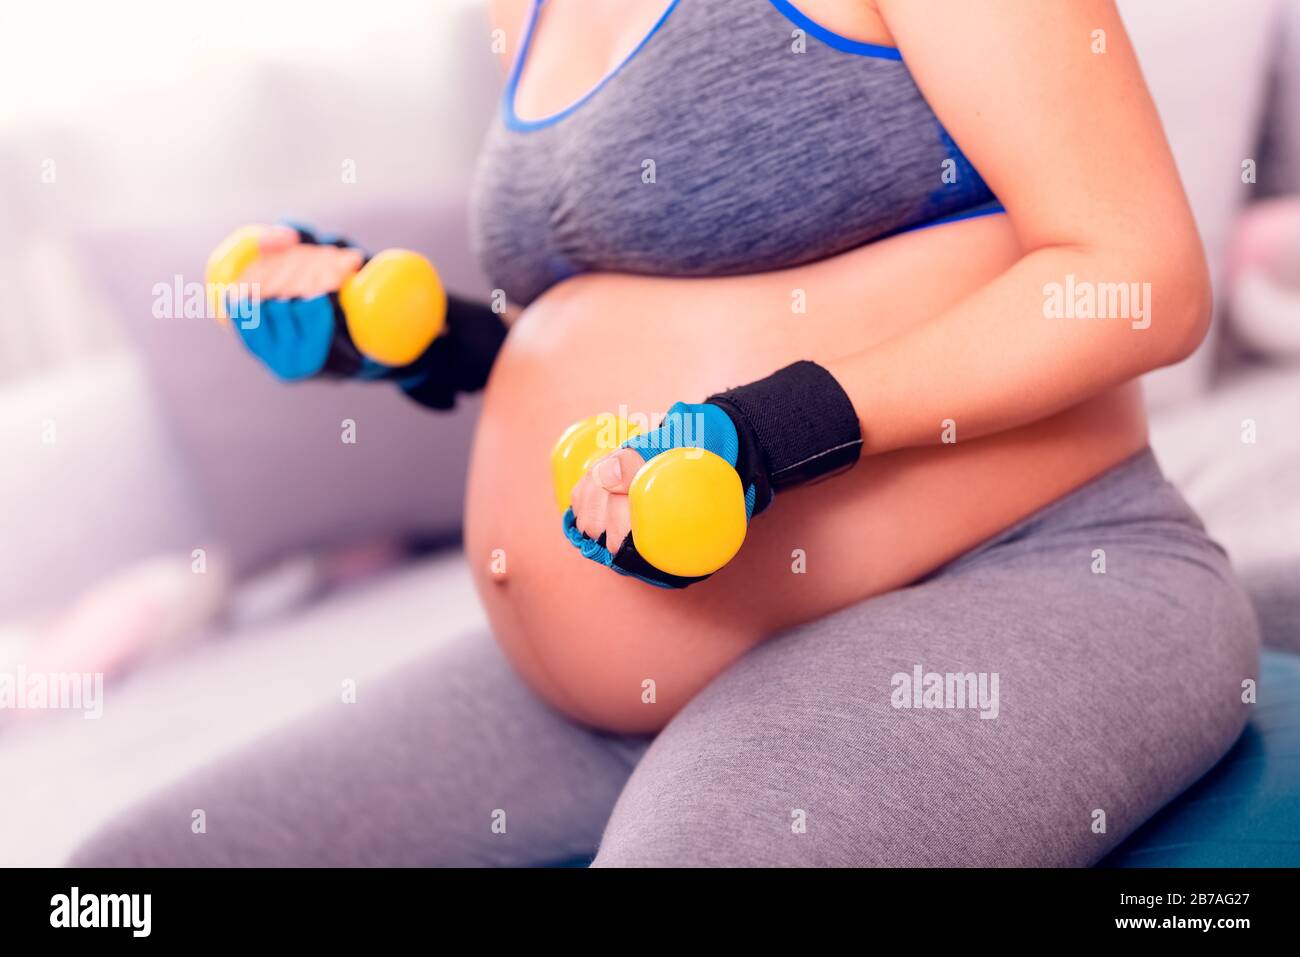 Schwangeres Frauentraining. Während der Schwangerschaft aktiv bleiben und mit Hanteln trainieren. Stockfoto